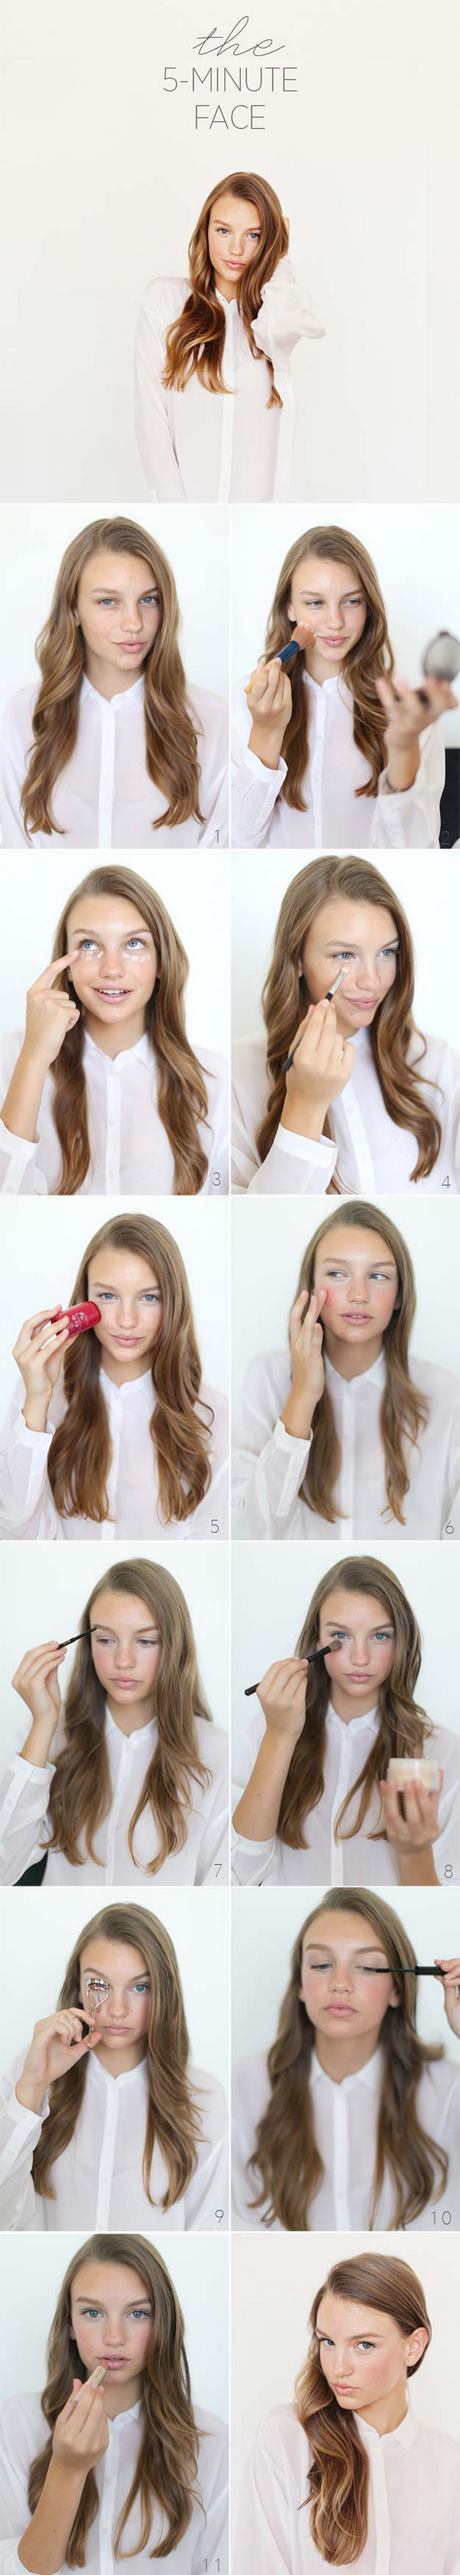 makeup-tips-tutorial-24_10 Make-up tips tutorial